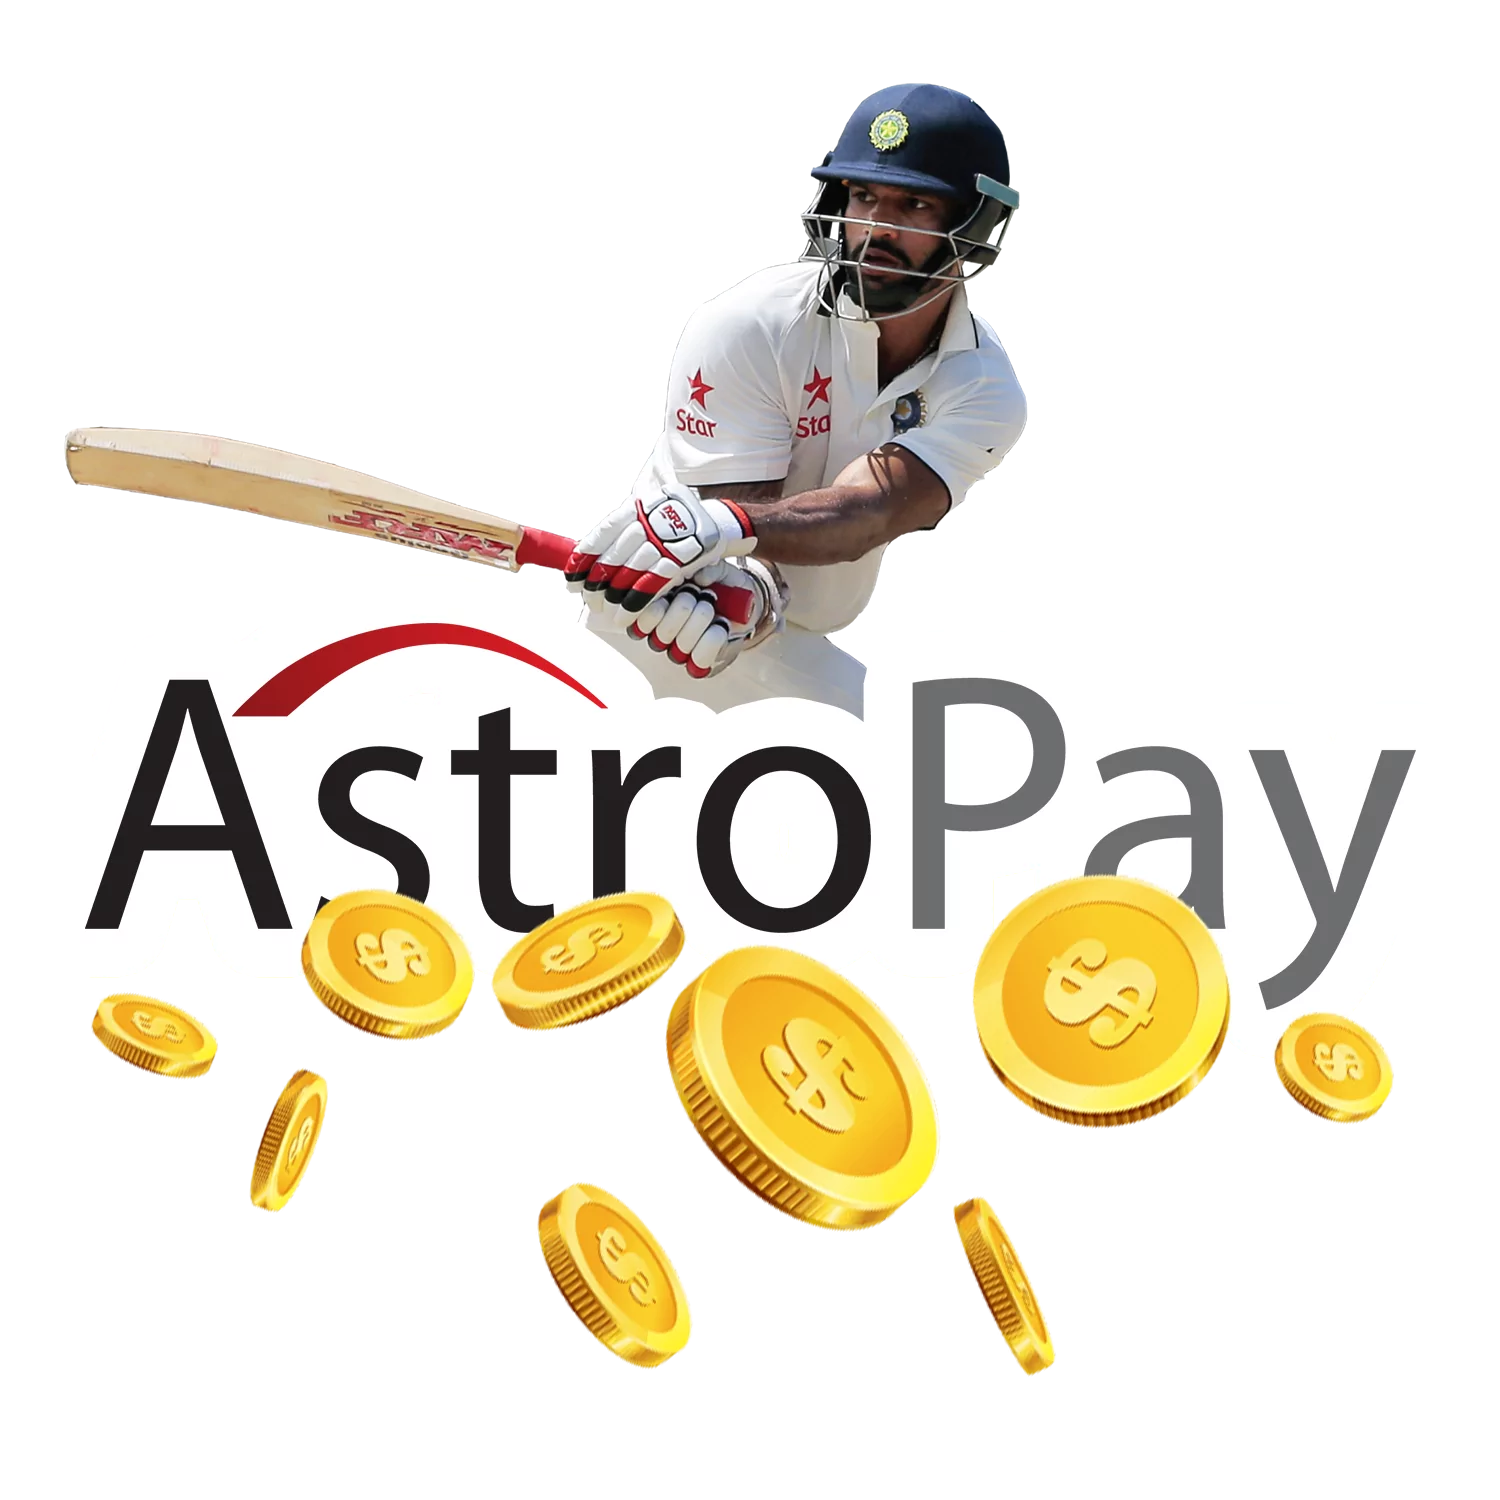 आप अपने क्रिकेट बेटिंग प्लेटफॉर्म को भारतीय रुपये में जमा करने के लिए Astropay का उपयोग कर सकते हैं।